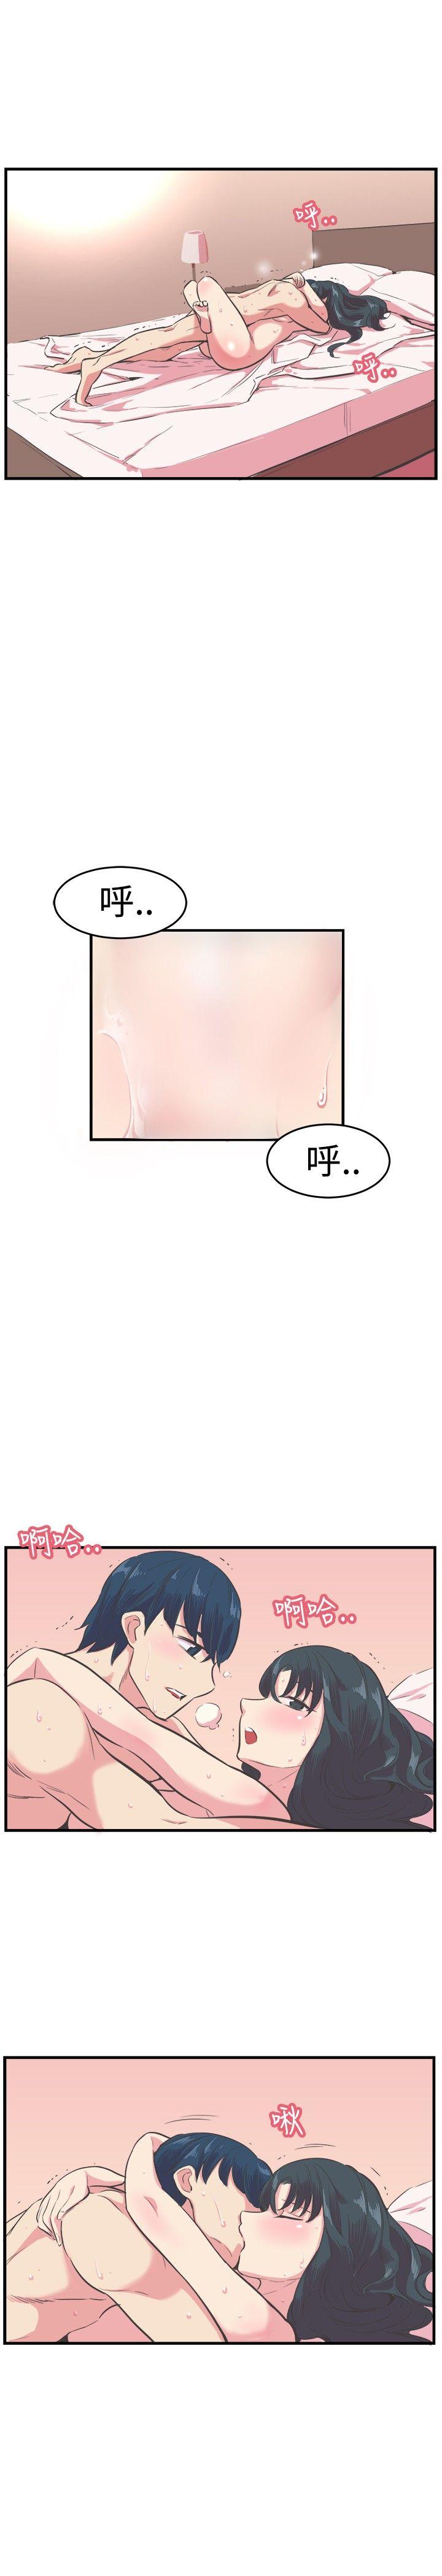 青春男女(完结)  第13话 漫画图片1.jpg